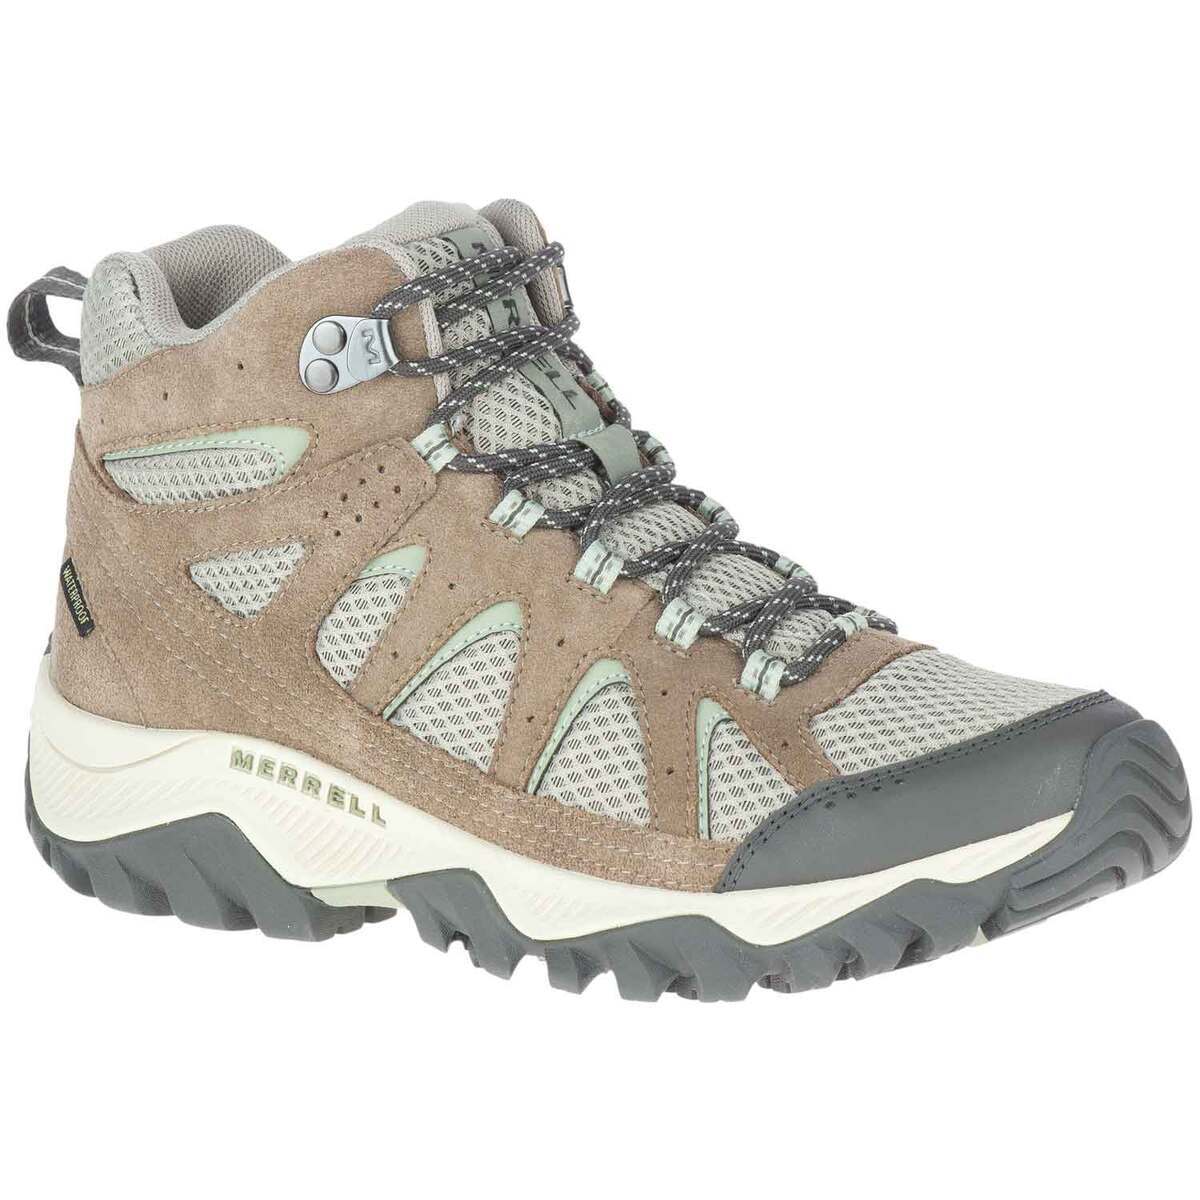 Merrell Women's Oakcreek Mid Hiking Boots | Sportsman's Warehouse